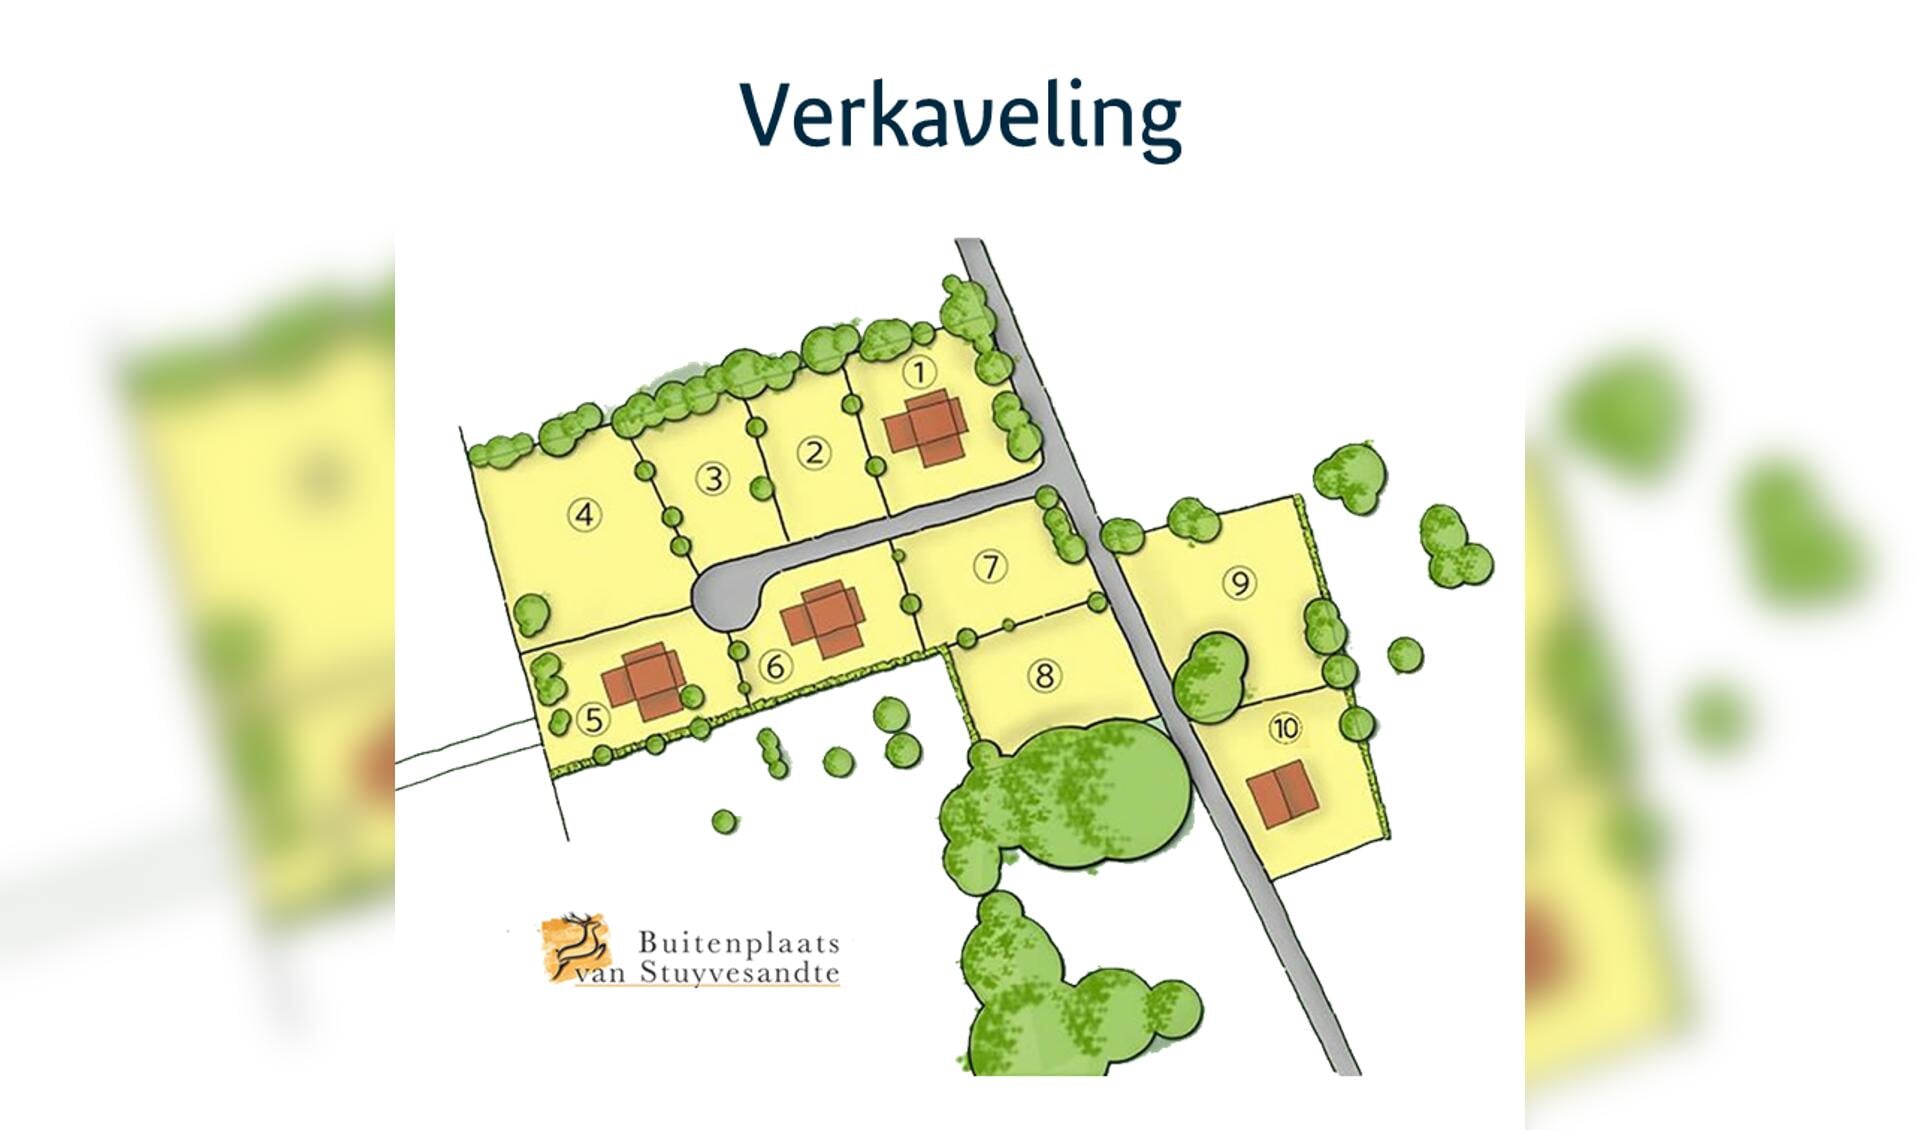 Een schets van de indeling van het voormalige recreatieterrein De Paalhoeve in Kootwijk waar dertien woningen verrijzen: 'buitenplaats van Stuyvesandte’.